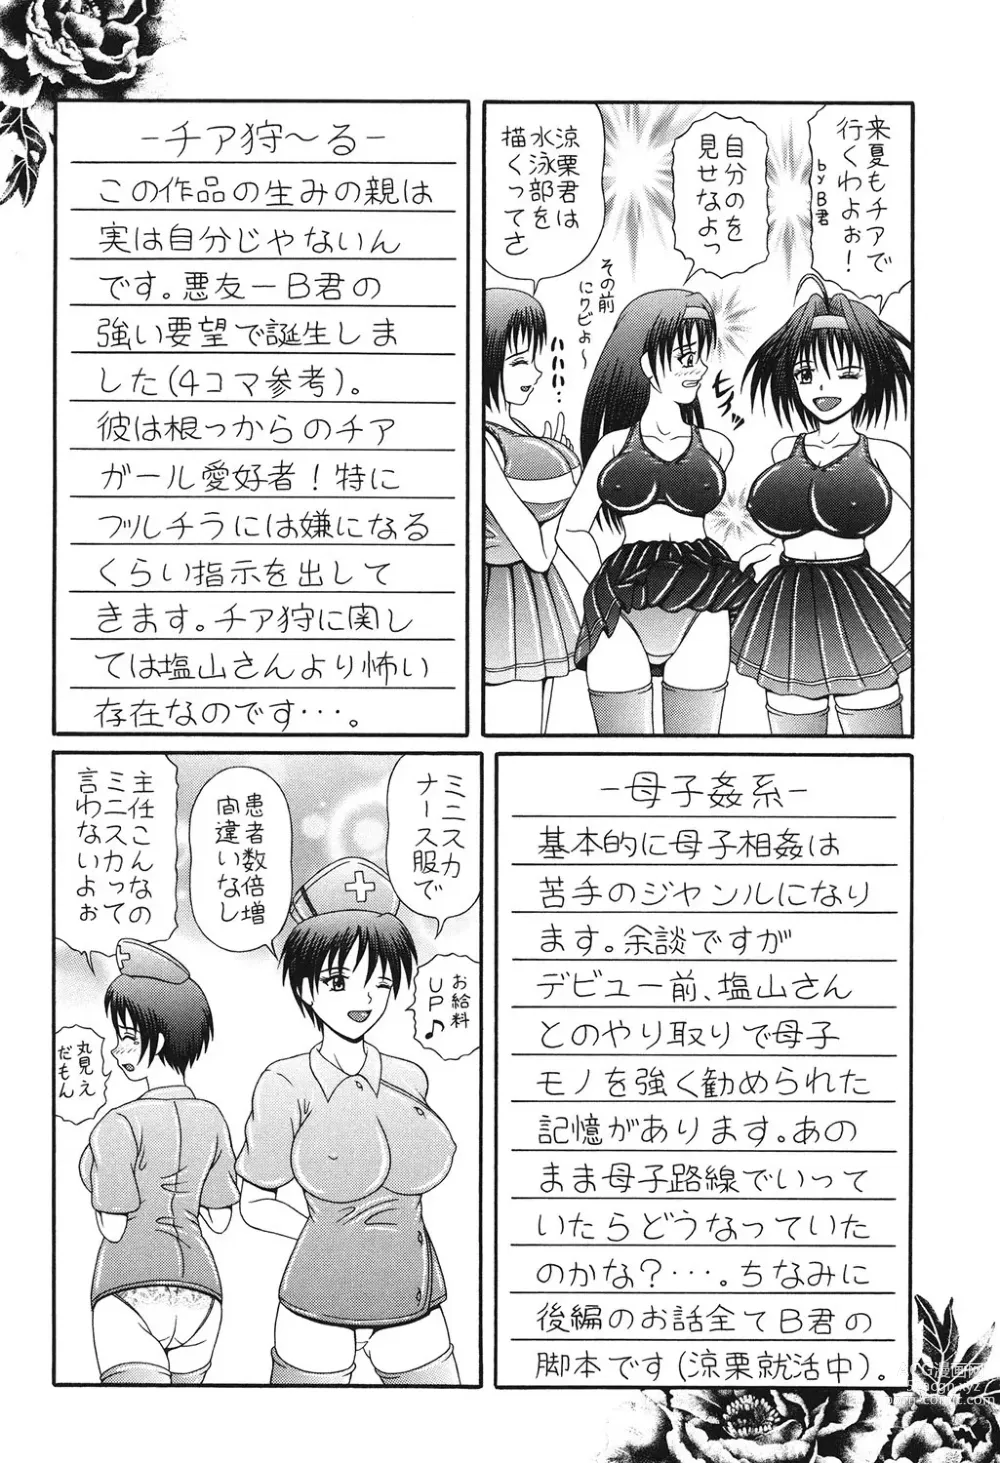 Page 145 of manga Todokanai Zekkyou - Nicht Erreichen Schreien